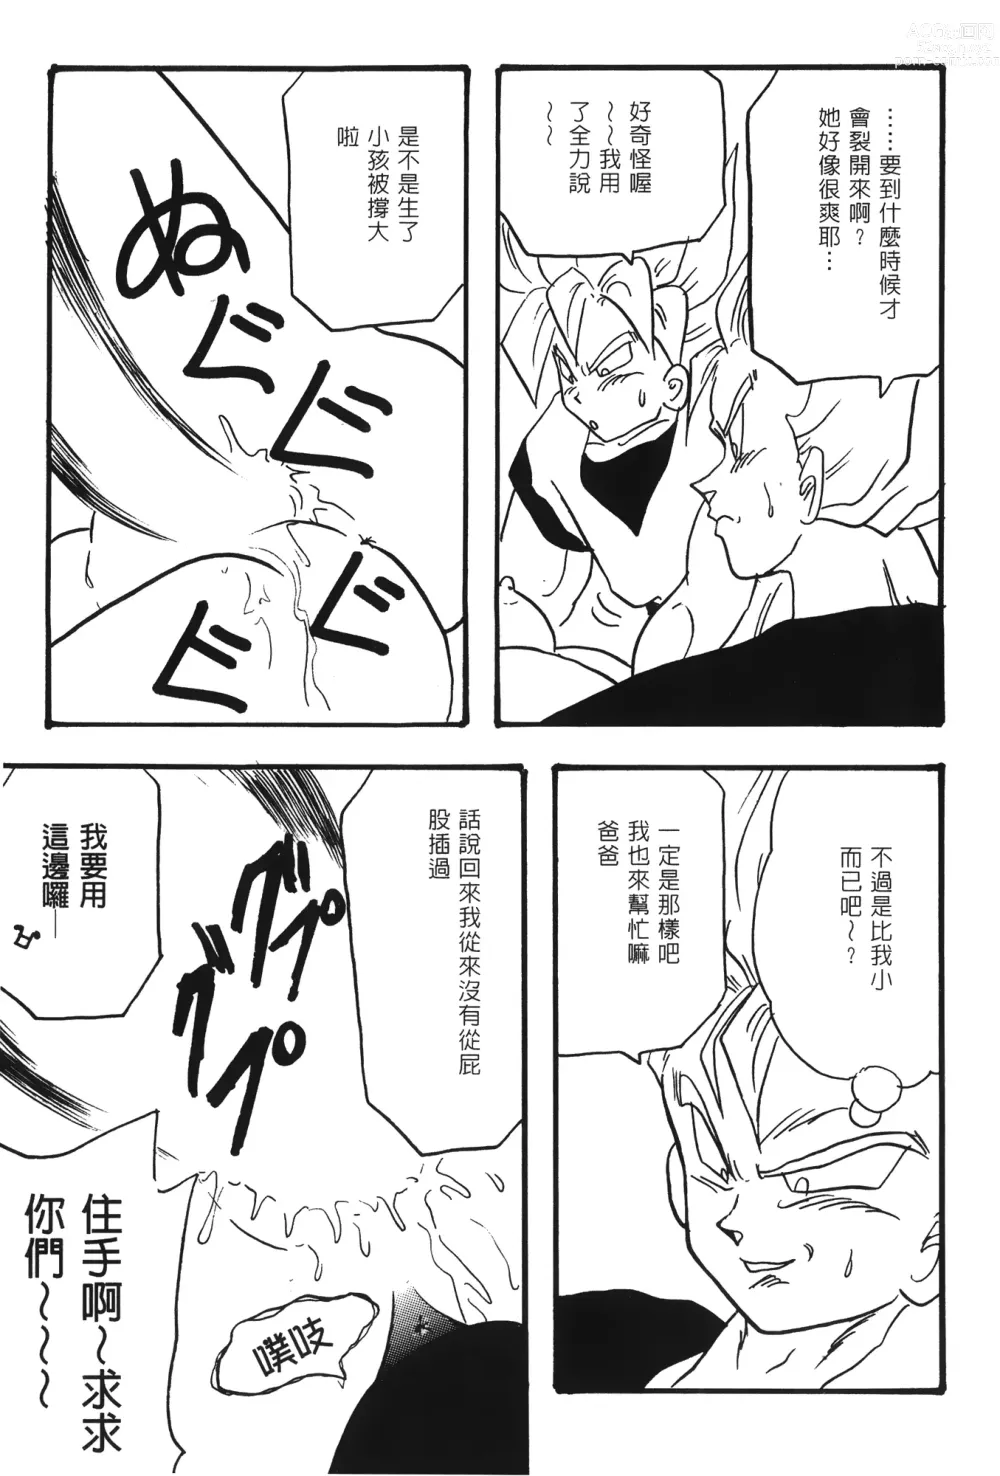 Page 12 of doujinshi ドラゴンパール 02